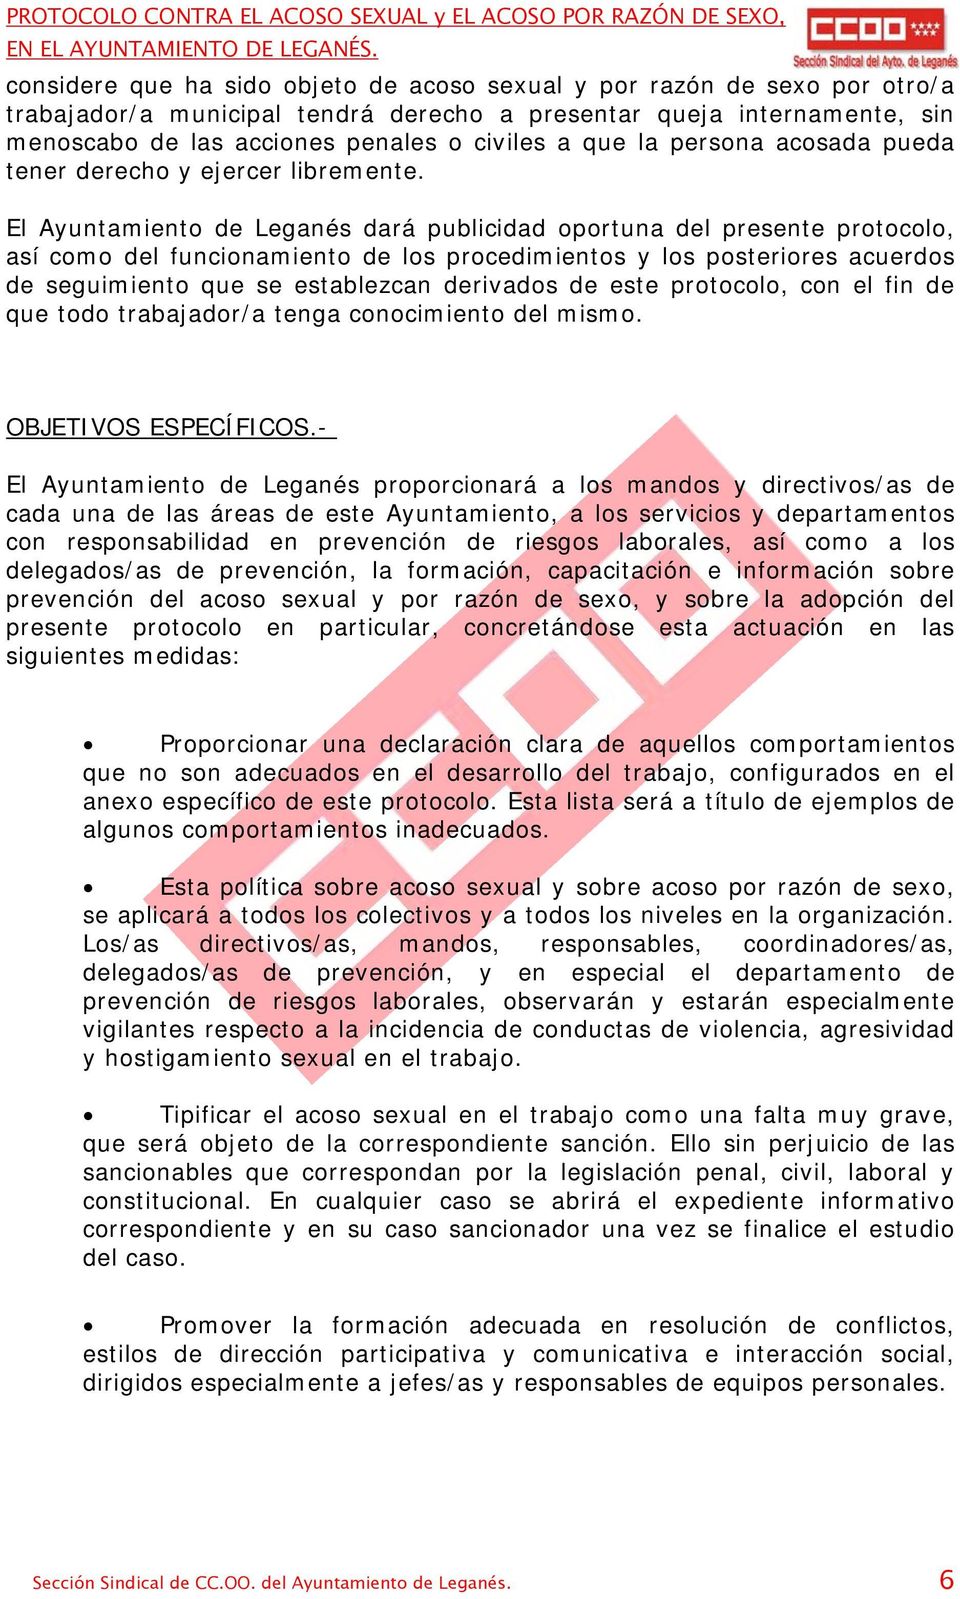 El Ayuntamiento de Leganés dará publicidad oportuna del presente protocolo, así como del funcionamiento de los procedimientos y los posteriores acuerdos de seguimiento que se establezcan derivados de